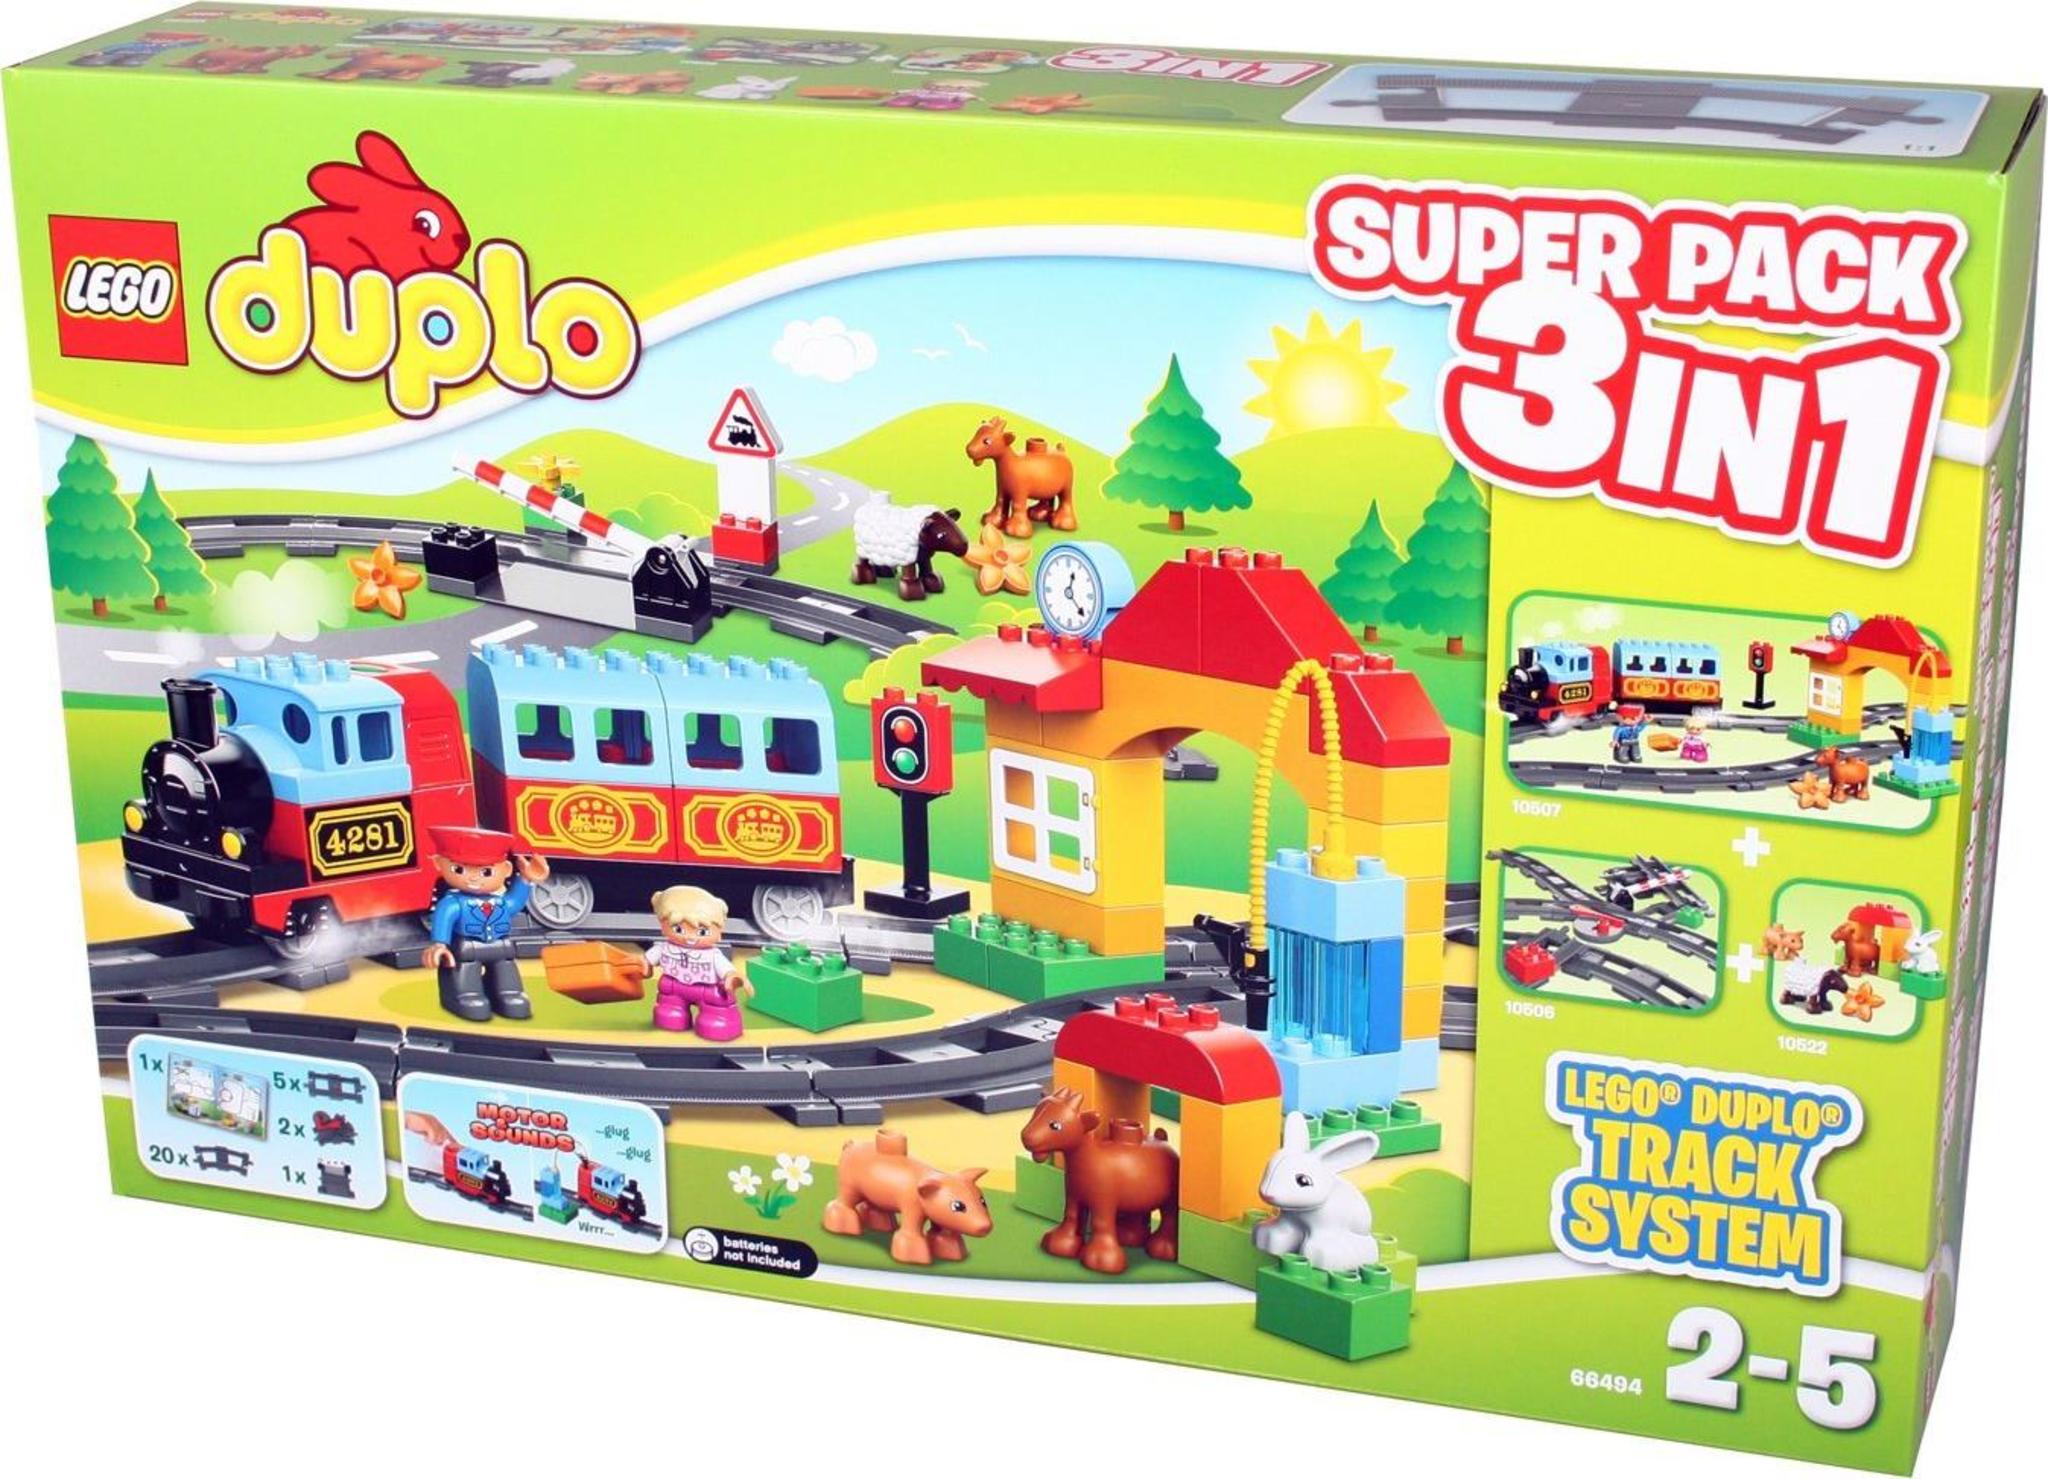 66429 DUPLO Trains Super Pack, Brickipedia